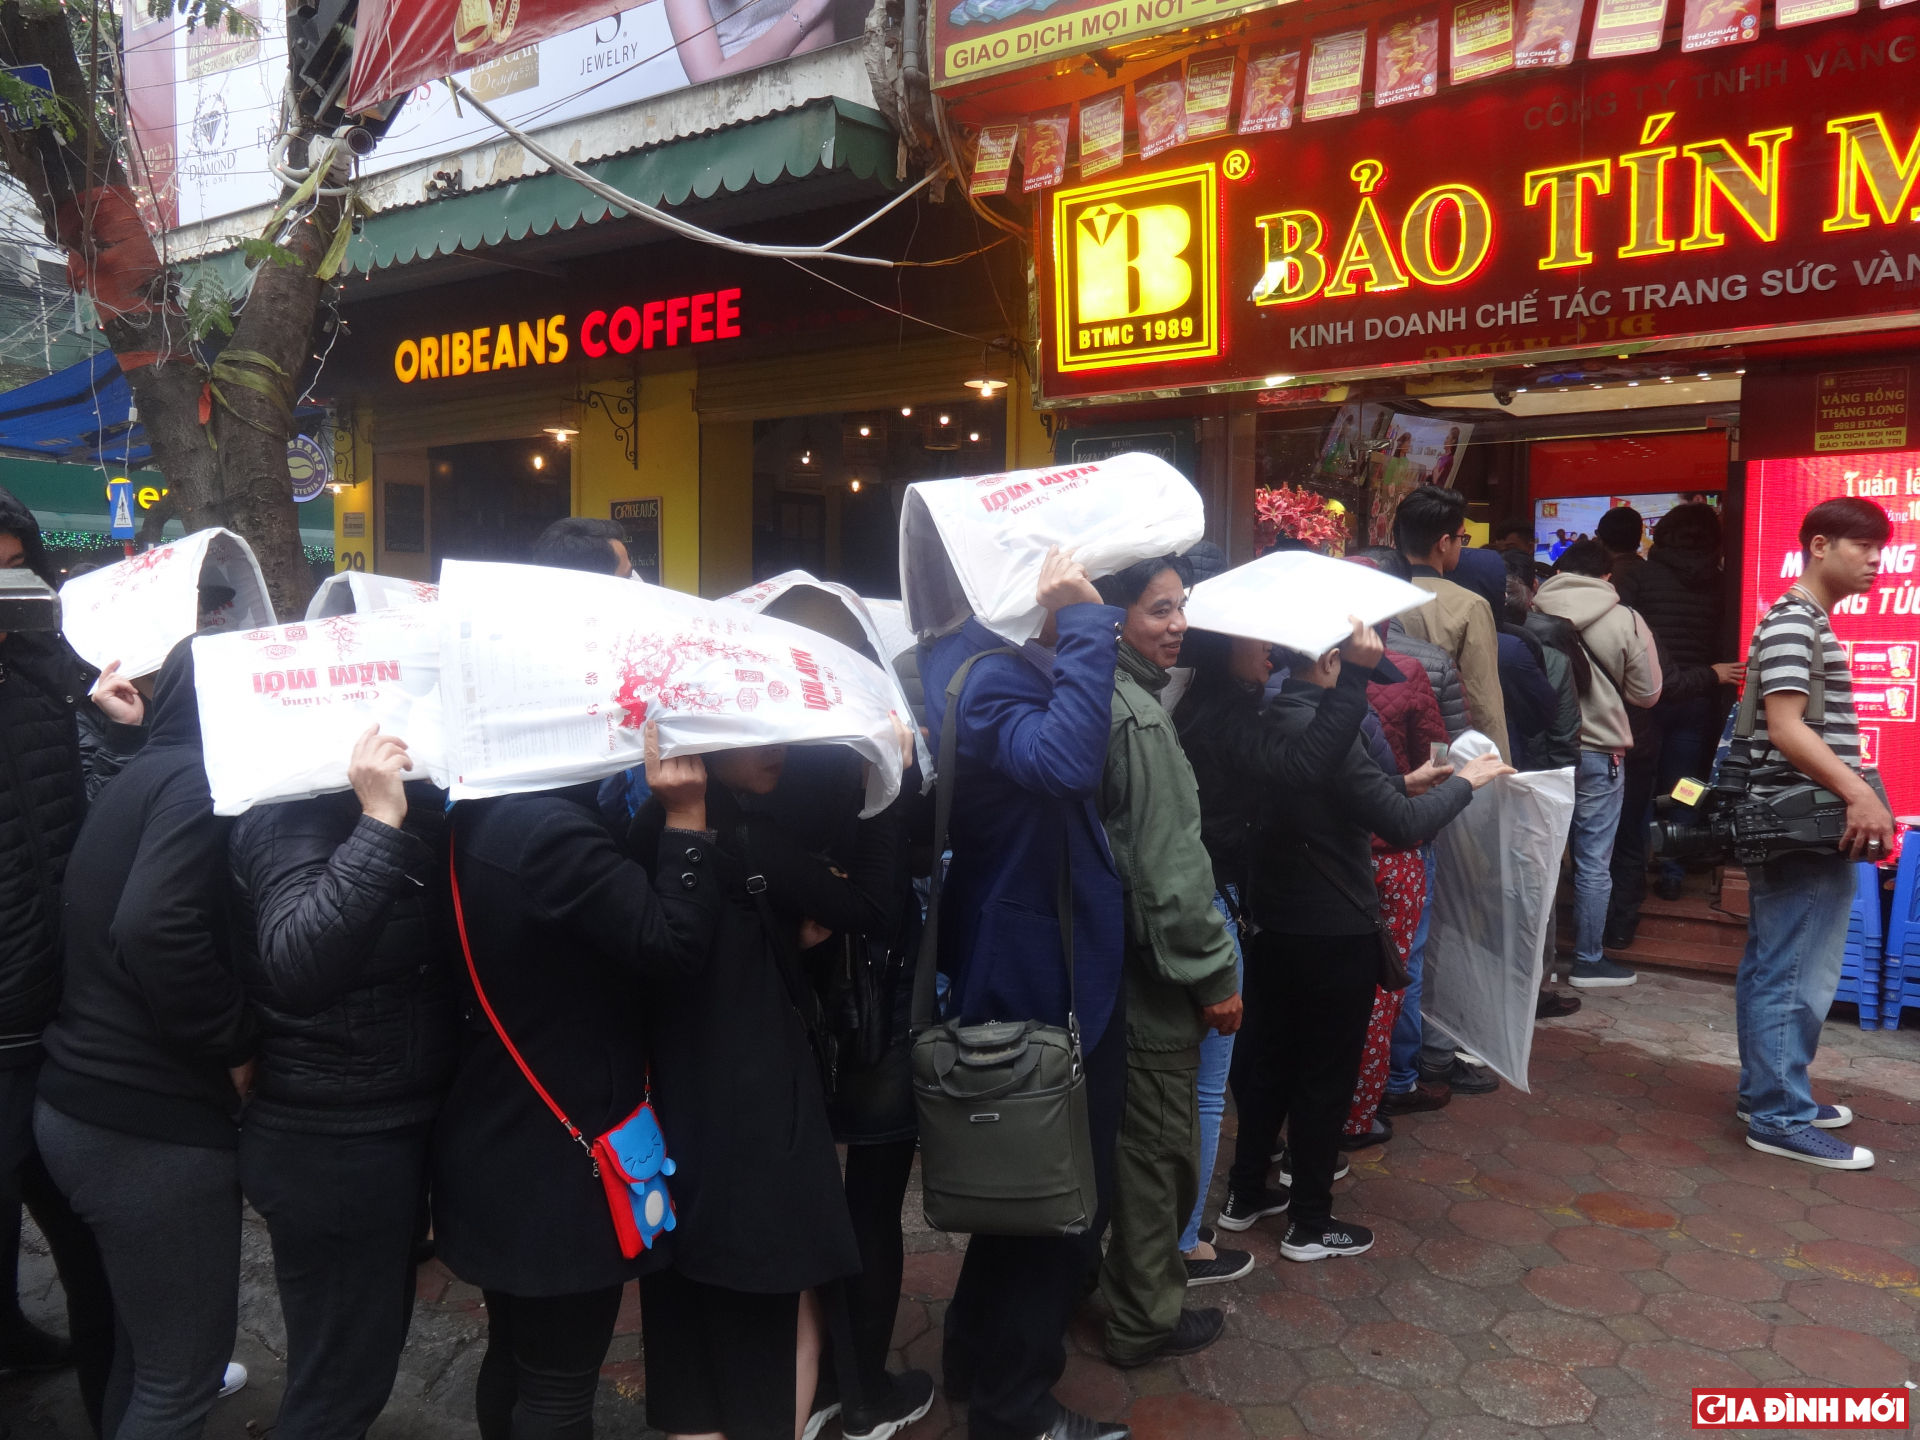 Bất chấp thời tiết mưa gió, nhiều người vẫn xếp hàng chờ mua vàng cầu may ngày vía thần tài.